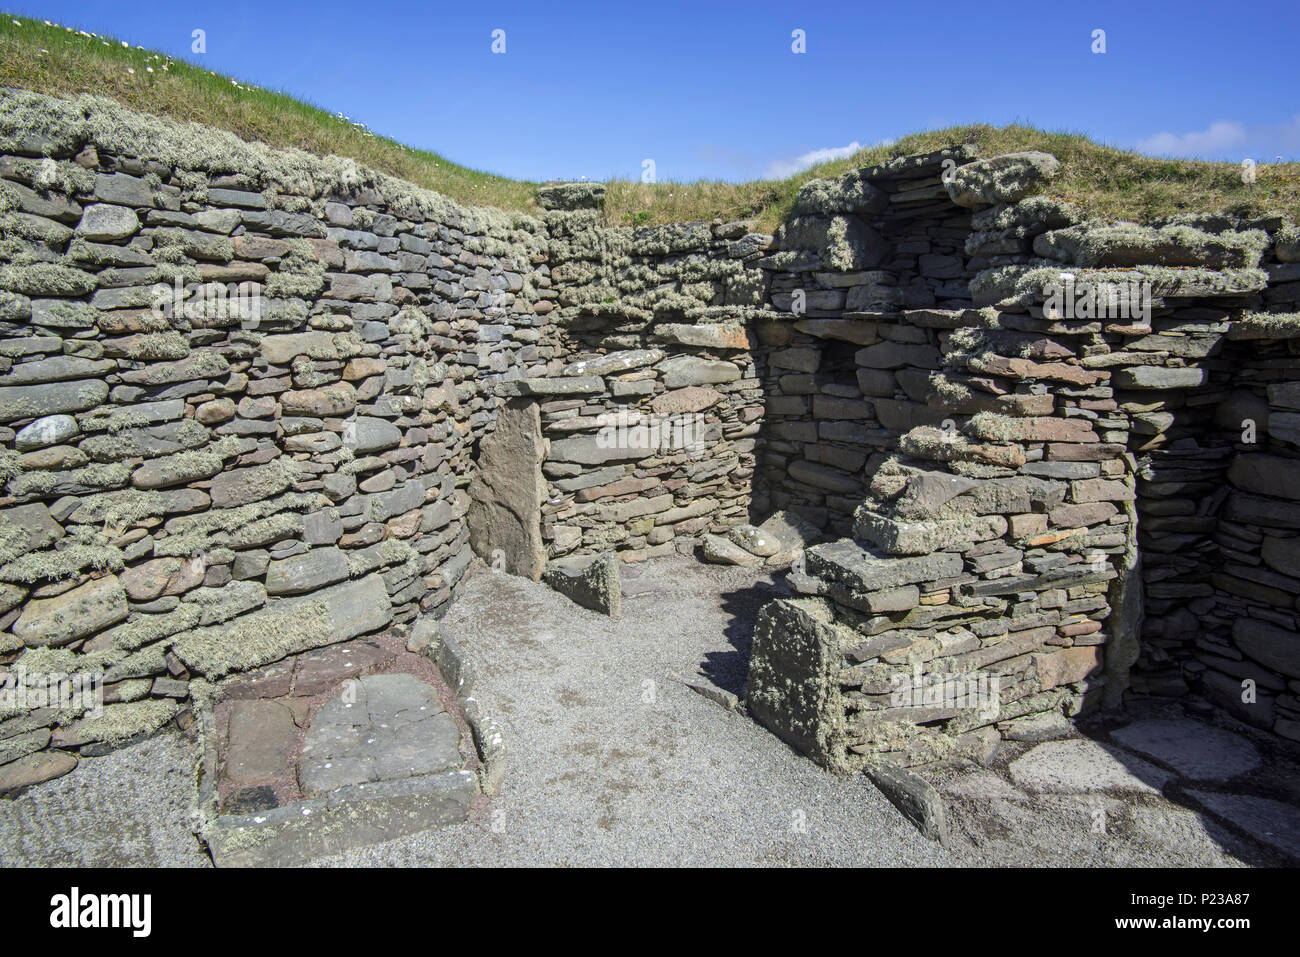 Kammer am Jarlshof, archäologische Stätte, die 2500 v. Chr. vorgeschichtliche und nordischen Siedlungen in Sumburgh, Shetland Inseln, Schottland, Großbritannien Stockfoto